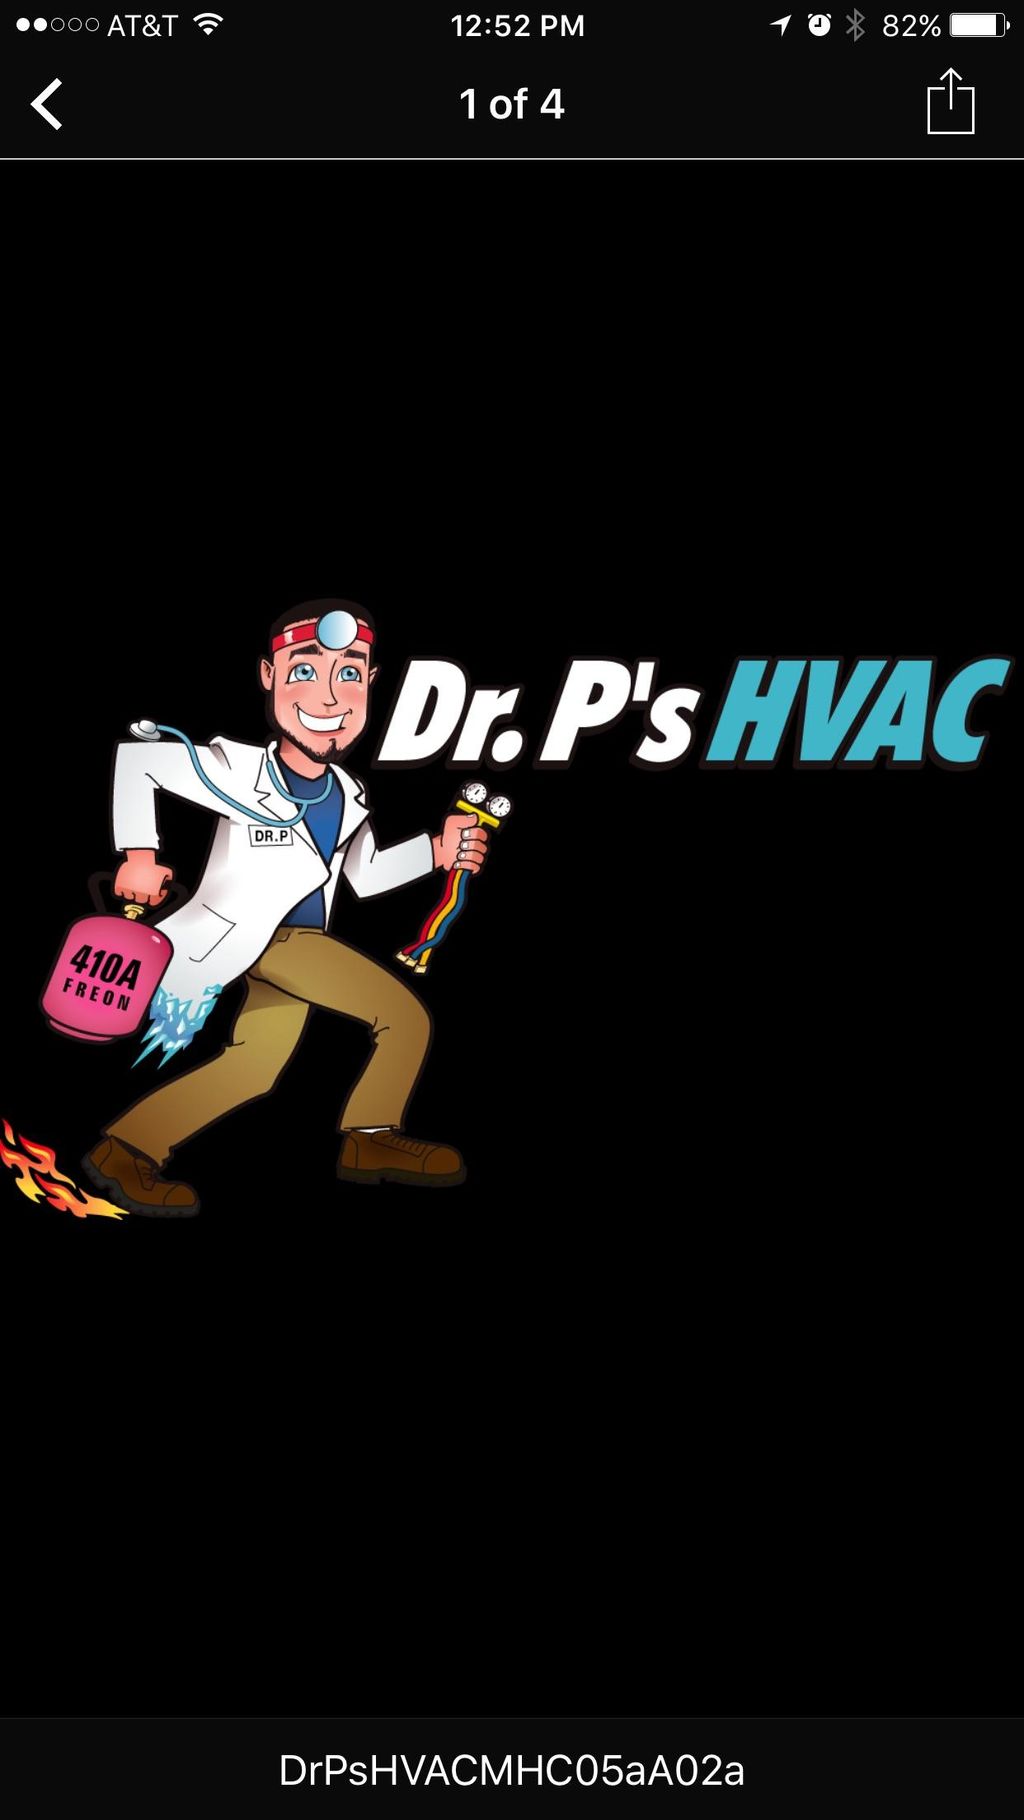 Dr. P's HVAC